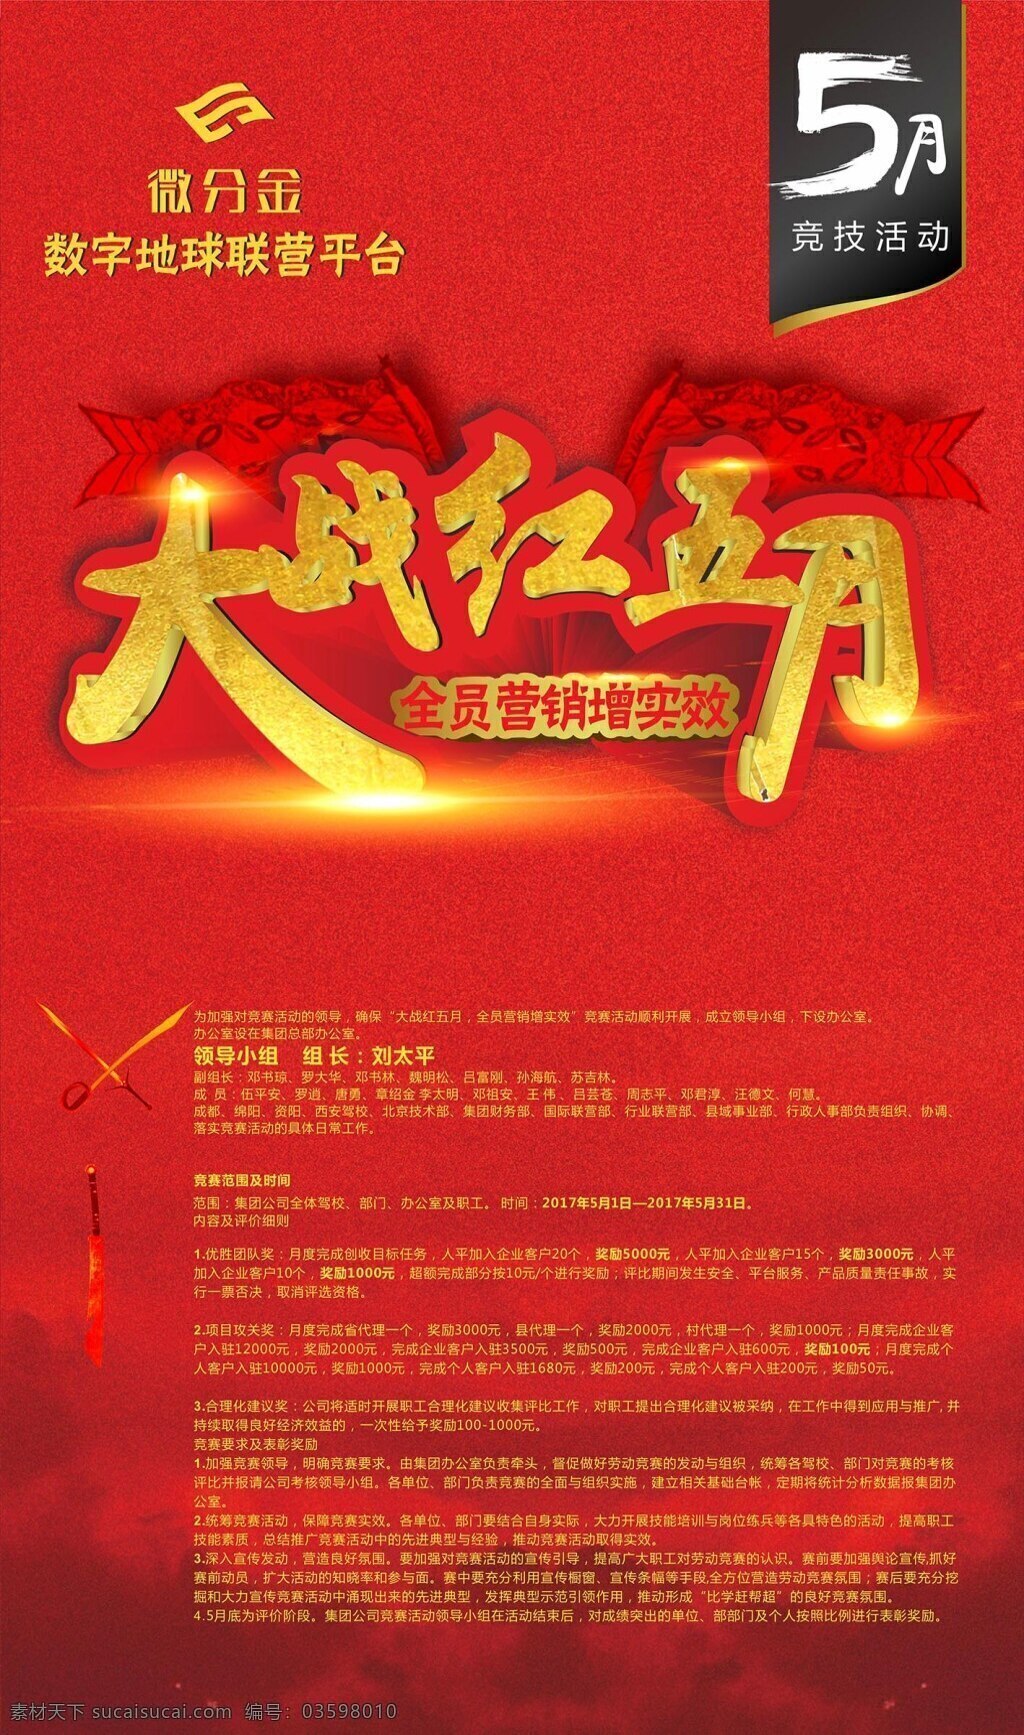 大战 红 五月 全员 增 实效 海报 红色质感背景 5月竞技 大战红五月 红色军旗 cdrx8 光效